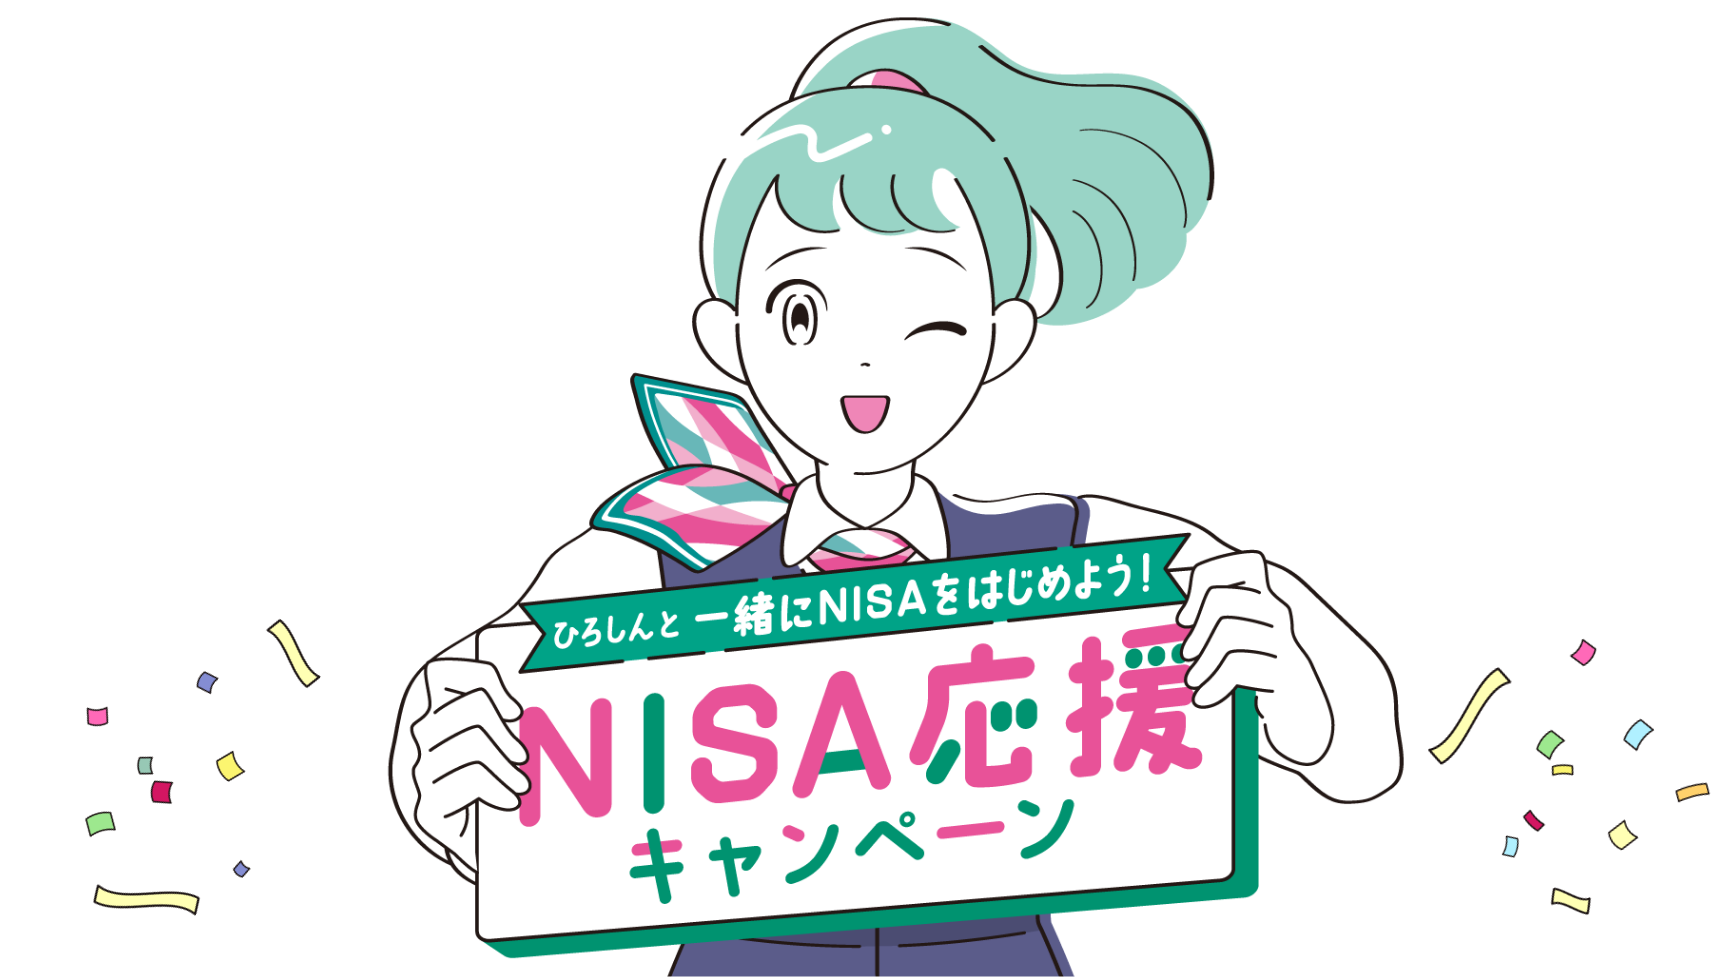 ひろしんと一緒にNISAをはじめよう!NISA応援キャンペーン